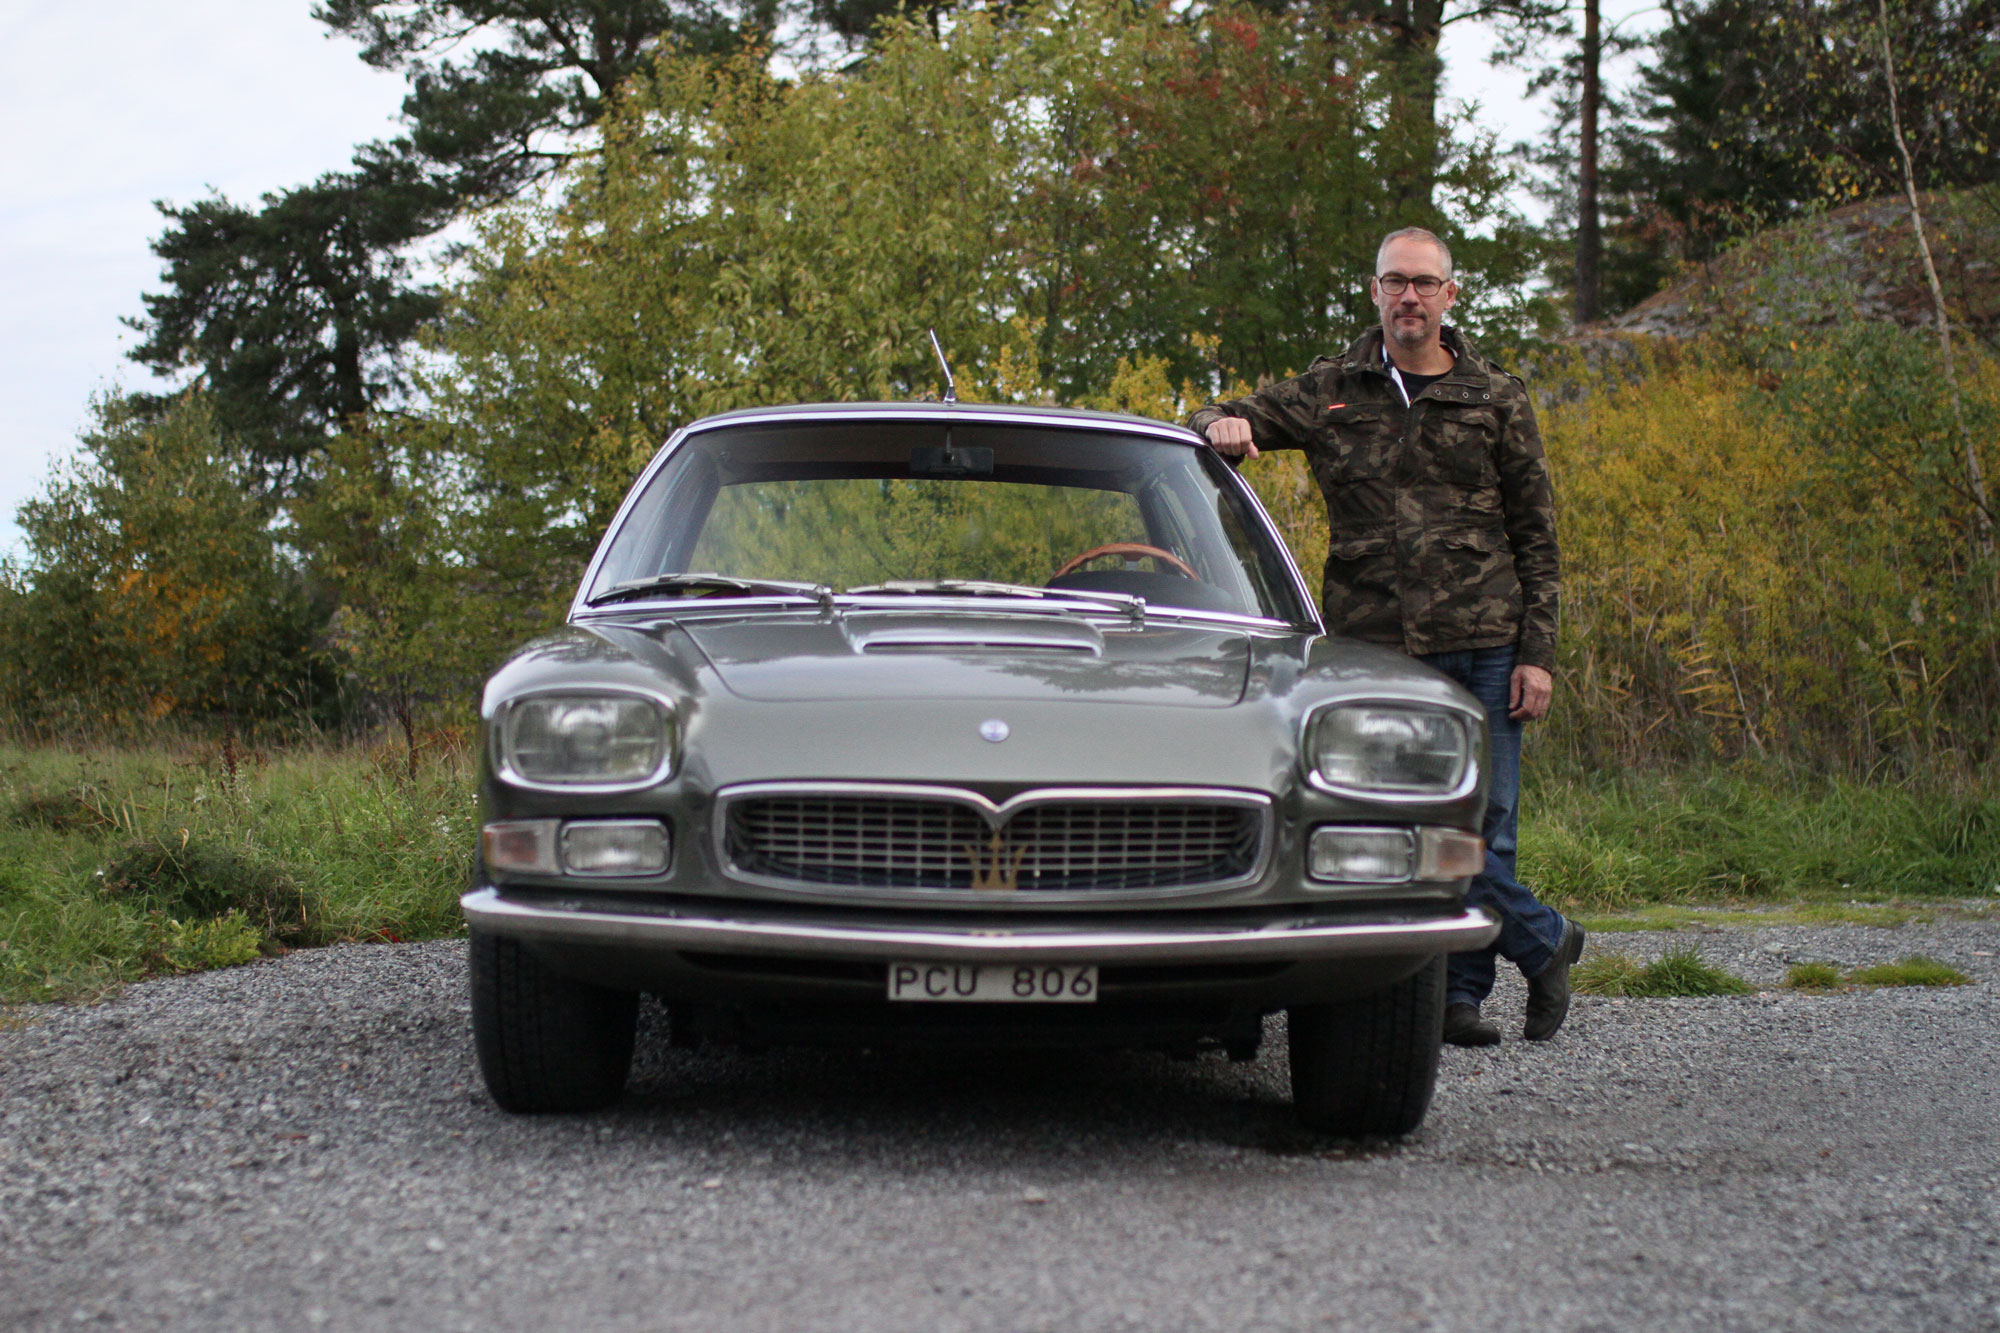 Maserati-Quattroporte-front-with-Fredric-Gustafsson